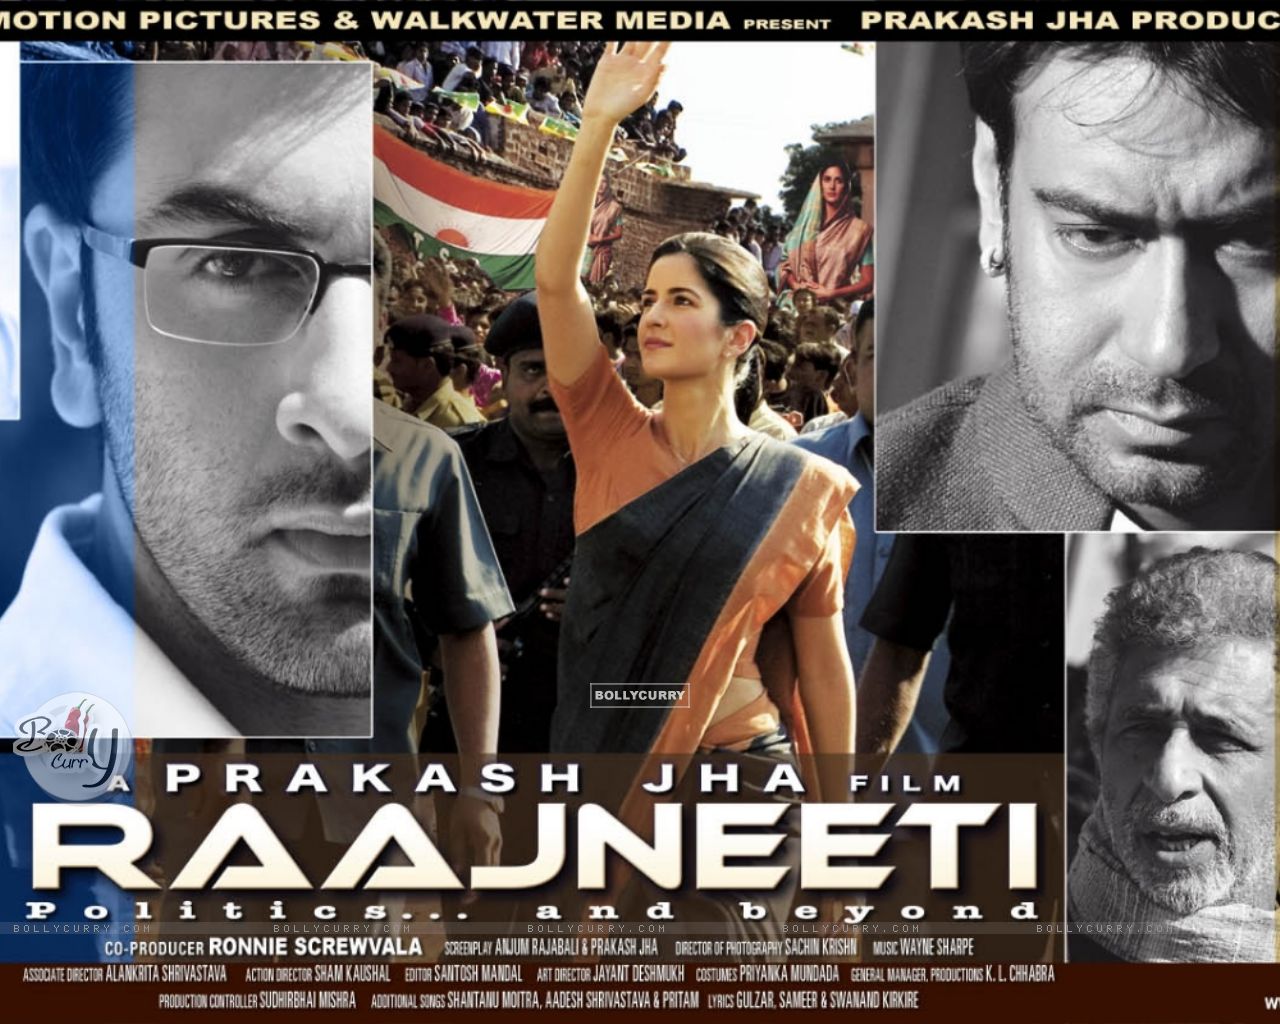 Raajneeti 2 Movie In Hindi Hd Download Utorrent Movies